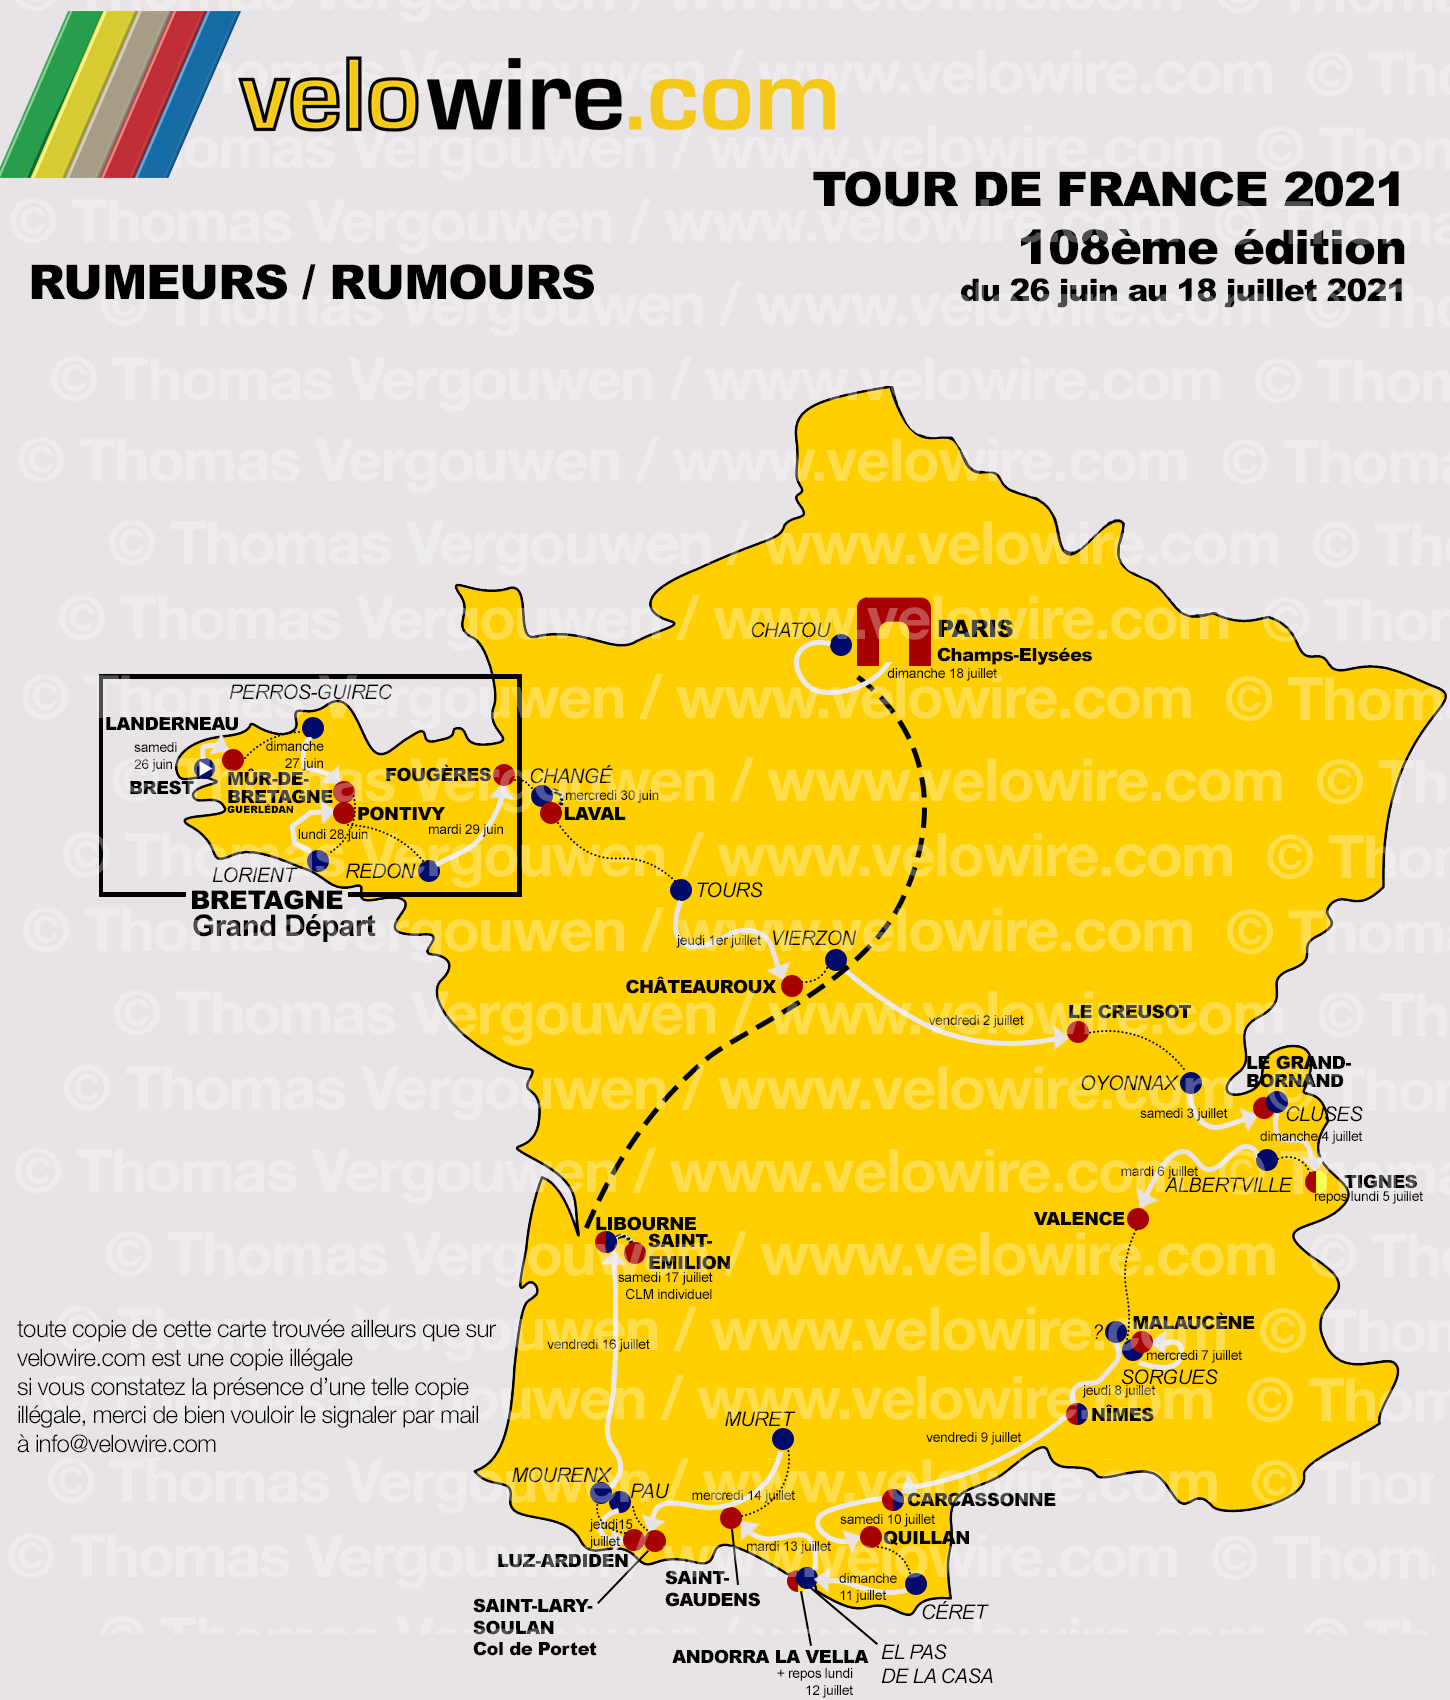 Tour de France 2021 : les rumeurs sur le parcours et les villes étapes :: Blog :: velowire.com ...